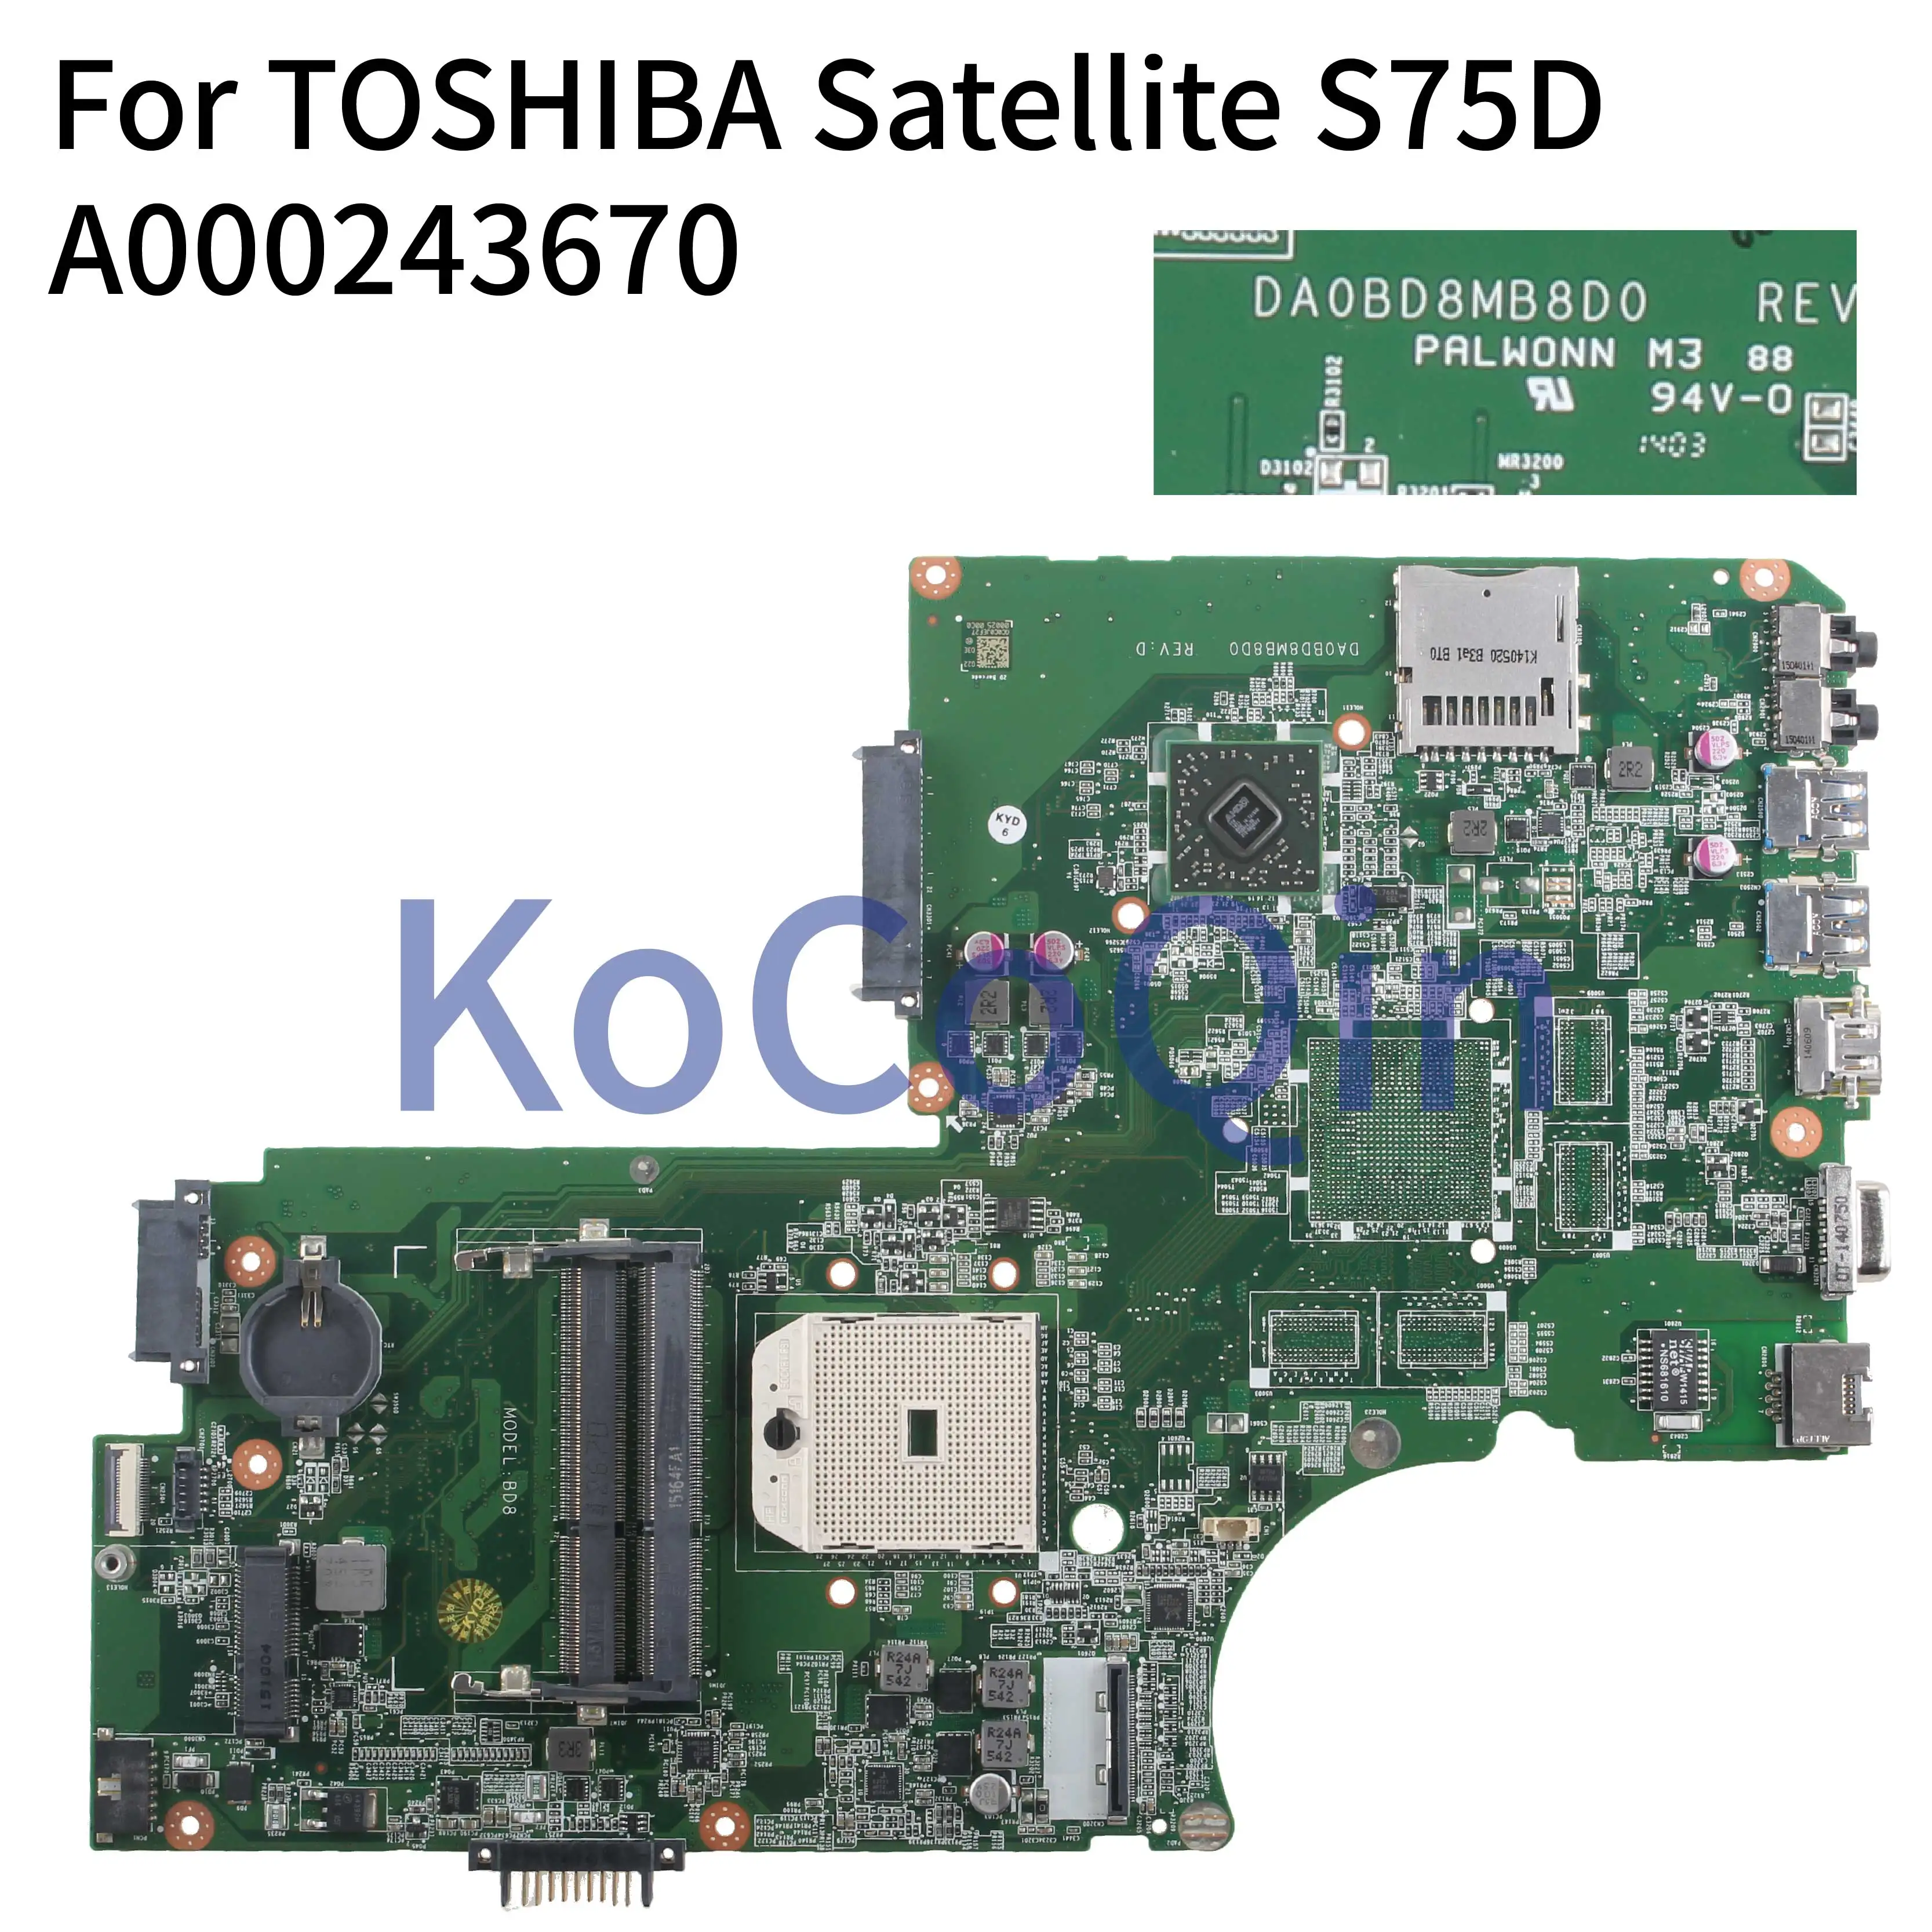   KoCoQin   TOSHIBA Satellite S75D L70D L75D Core AMD   A000243670 DAOBD8MB8D0 